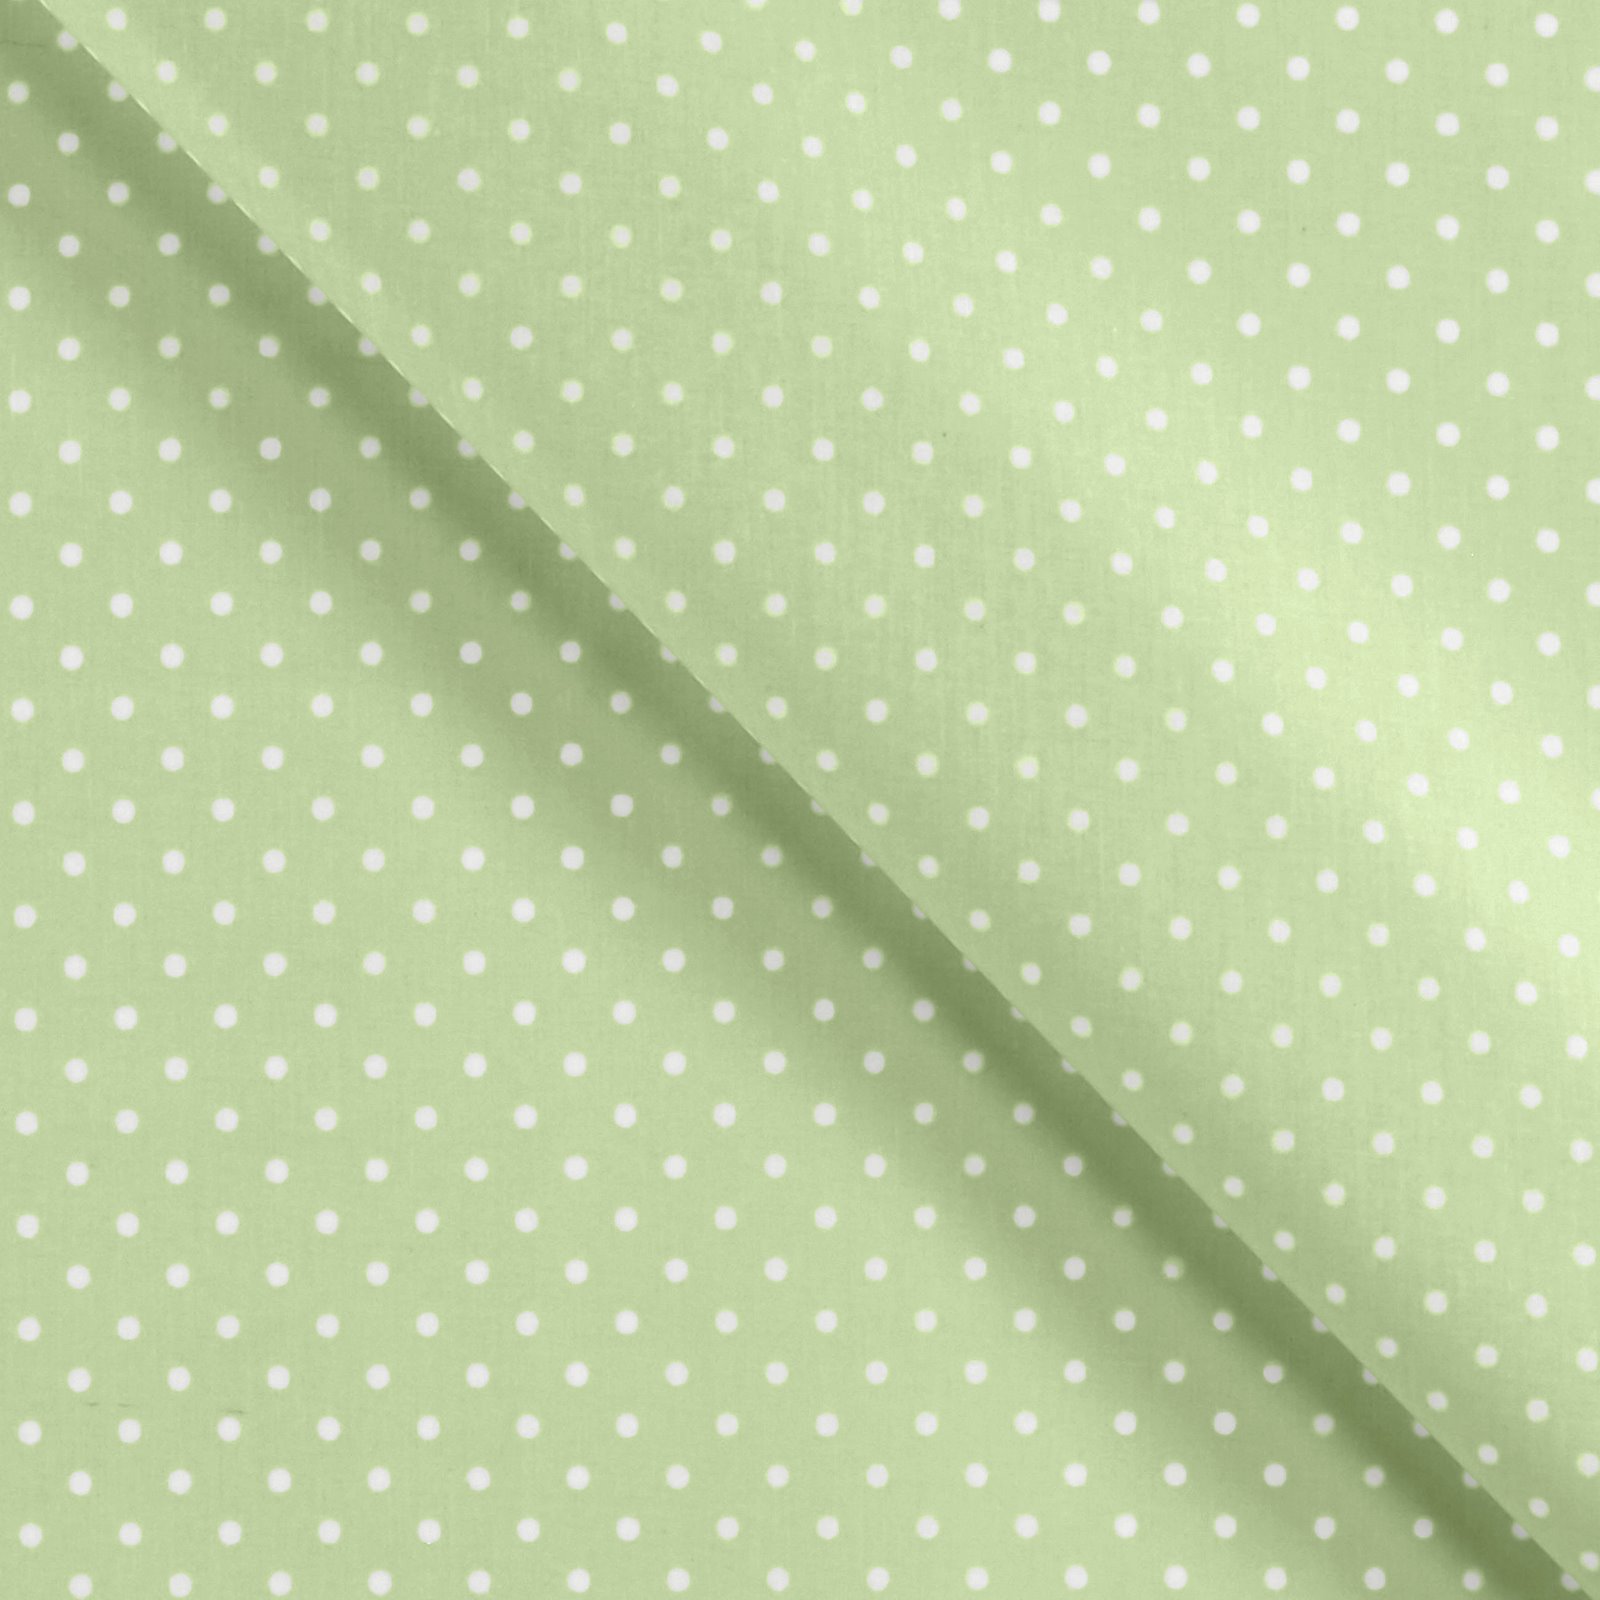 Tekstilvoksduk lys grønn m hvite prikker 861508_pack